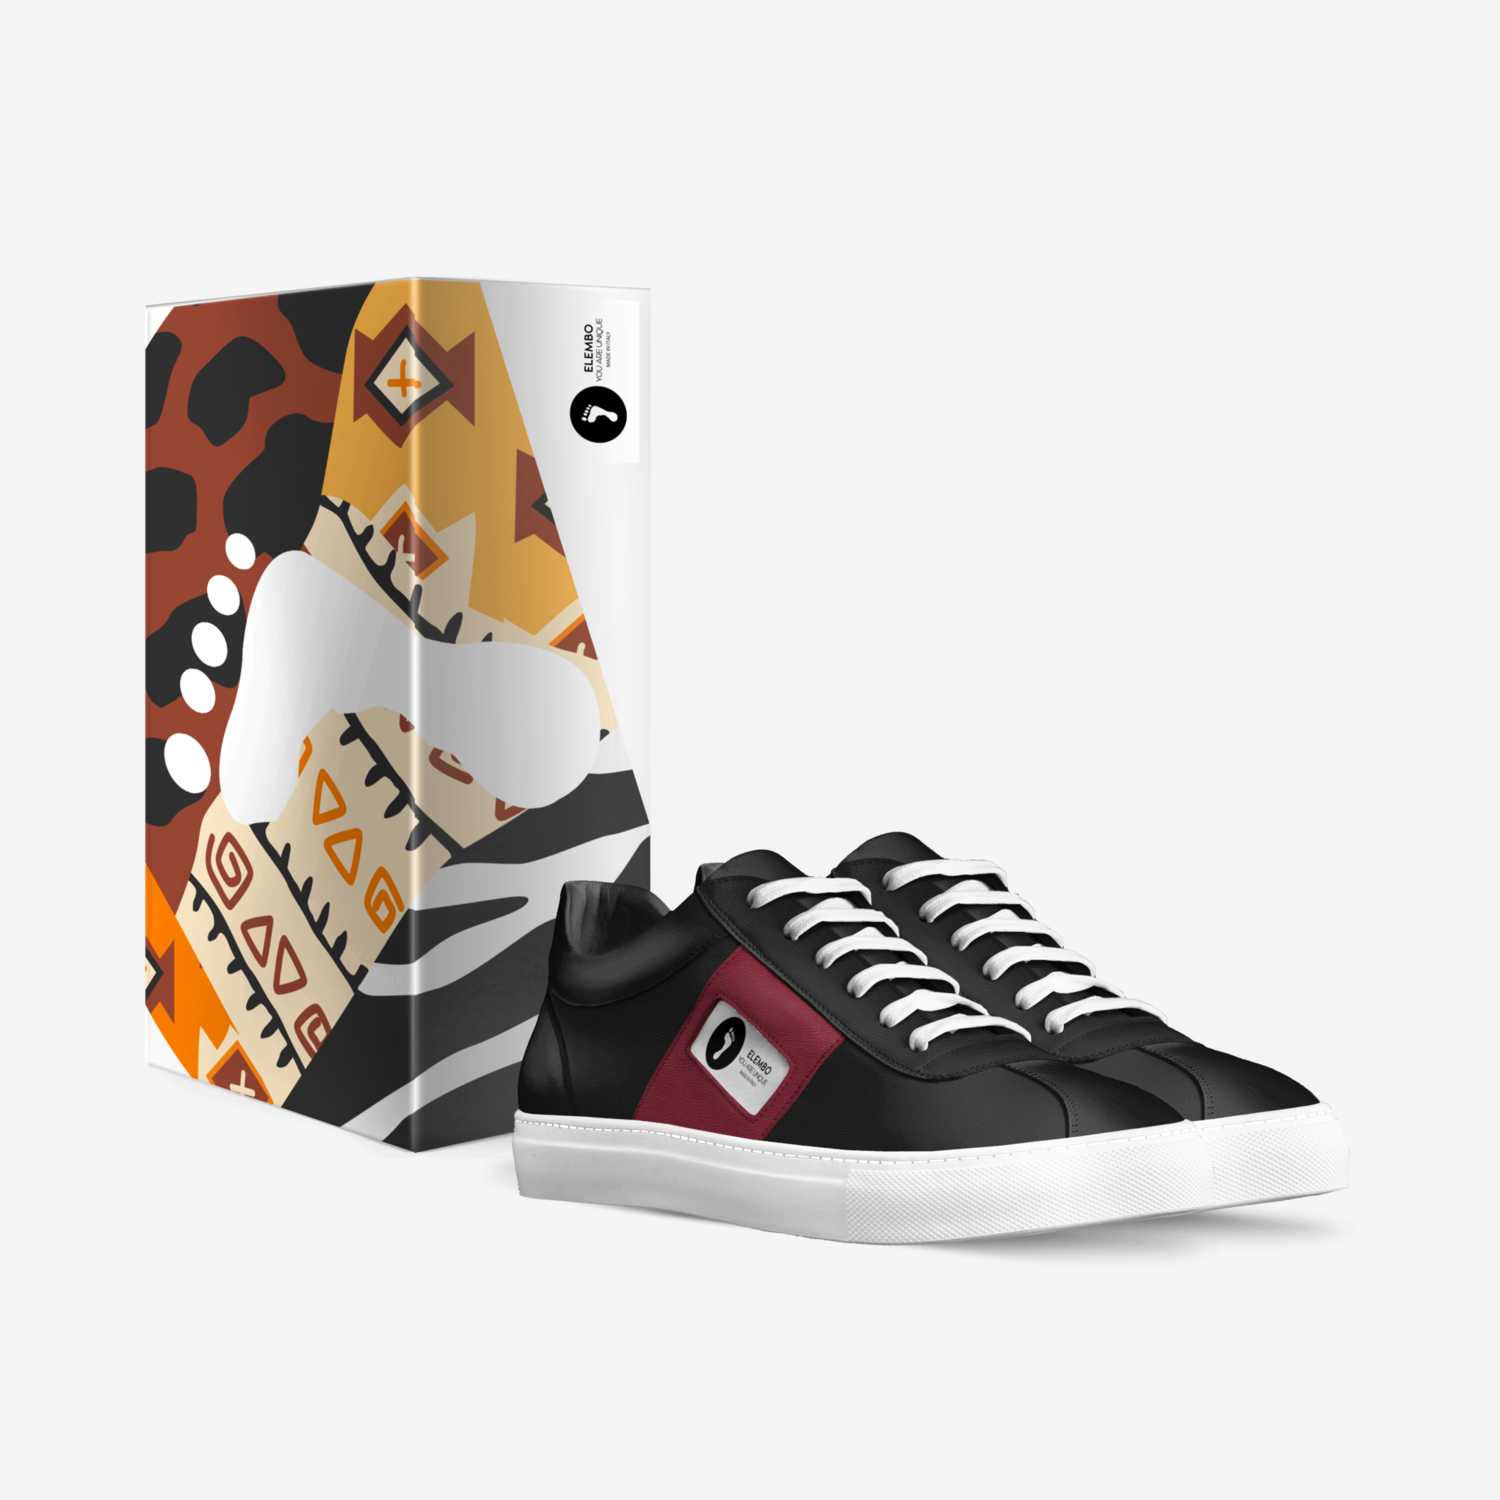 Elembo YAU custom made in Italy shoes by Franck Katshunga | Box view